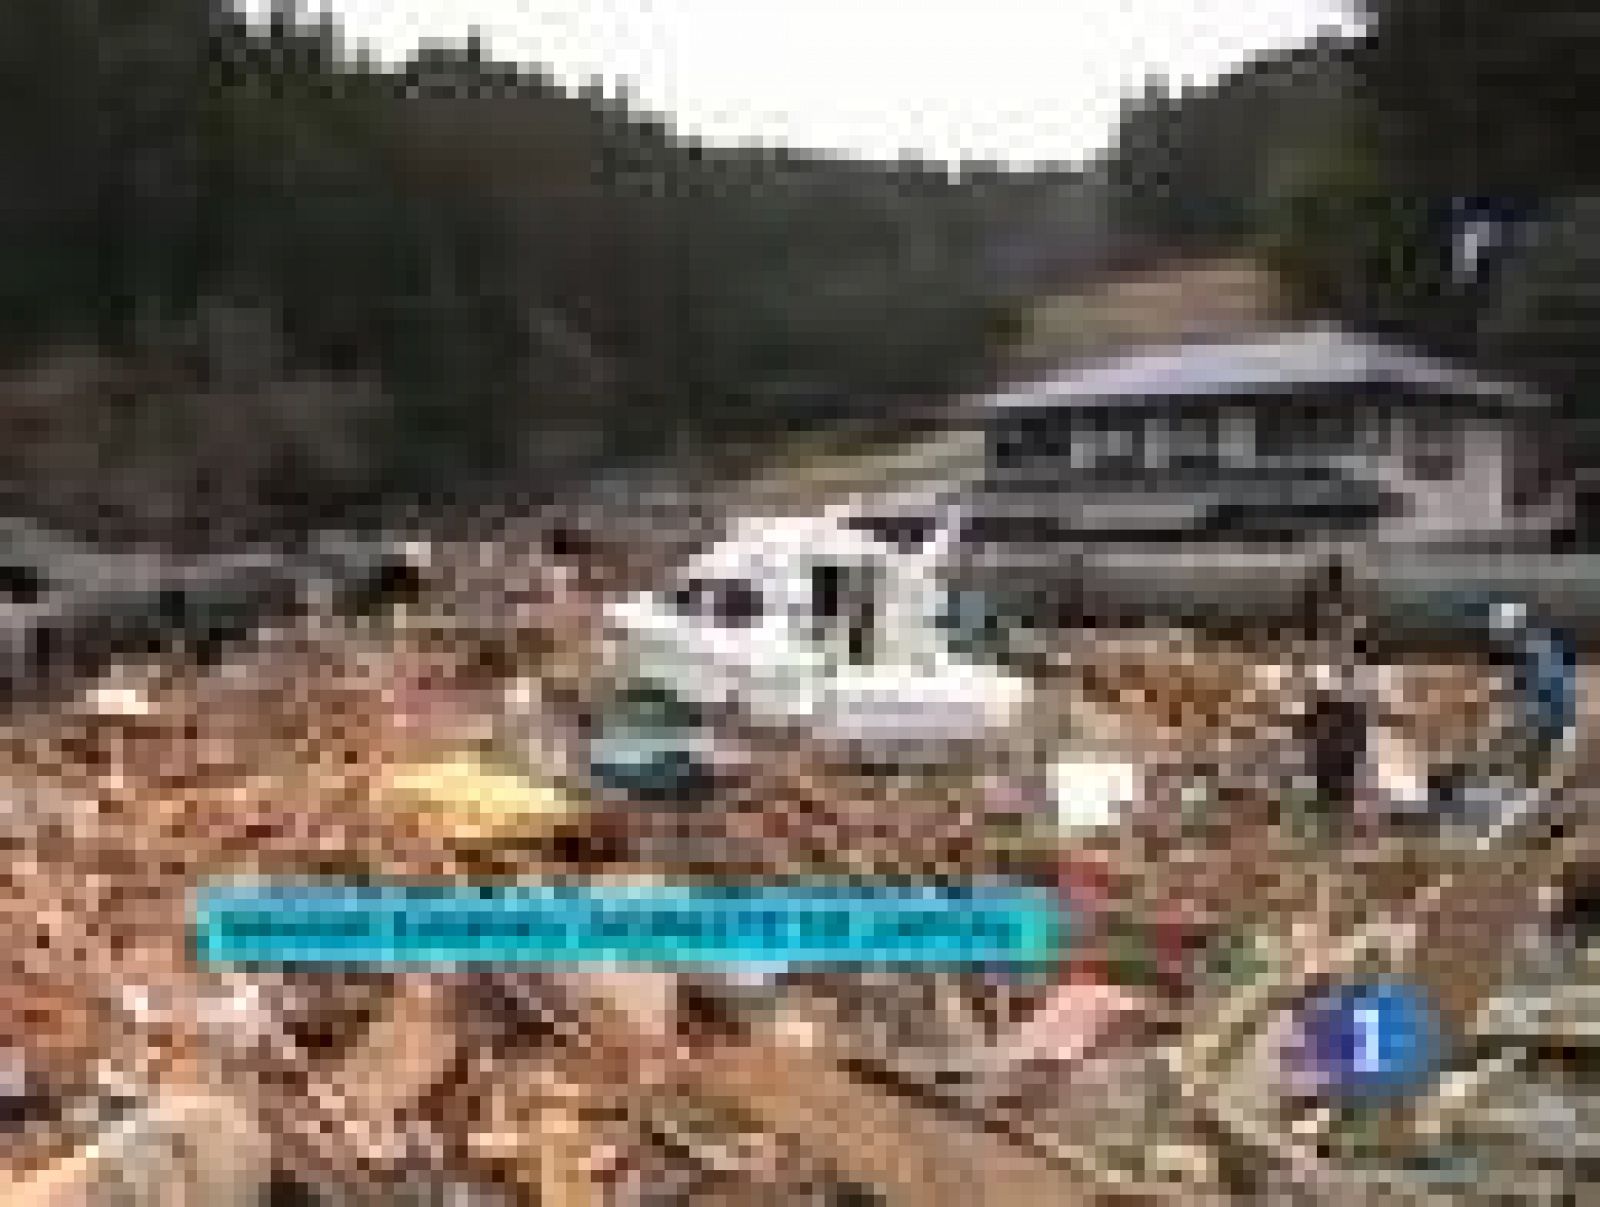  Minami Sanriku, uno de los pueblos nipones desaparecidos tras el tsunami